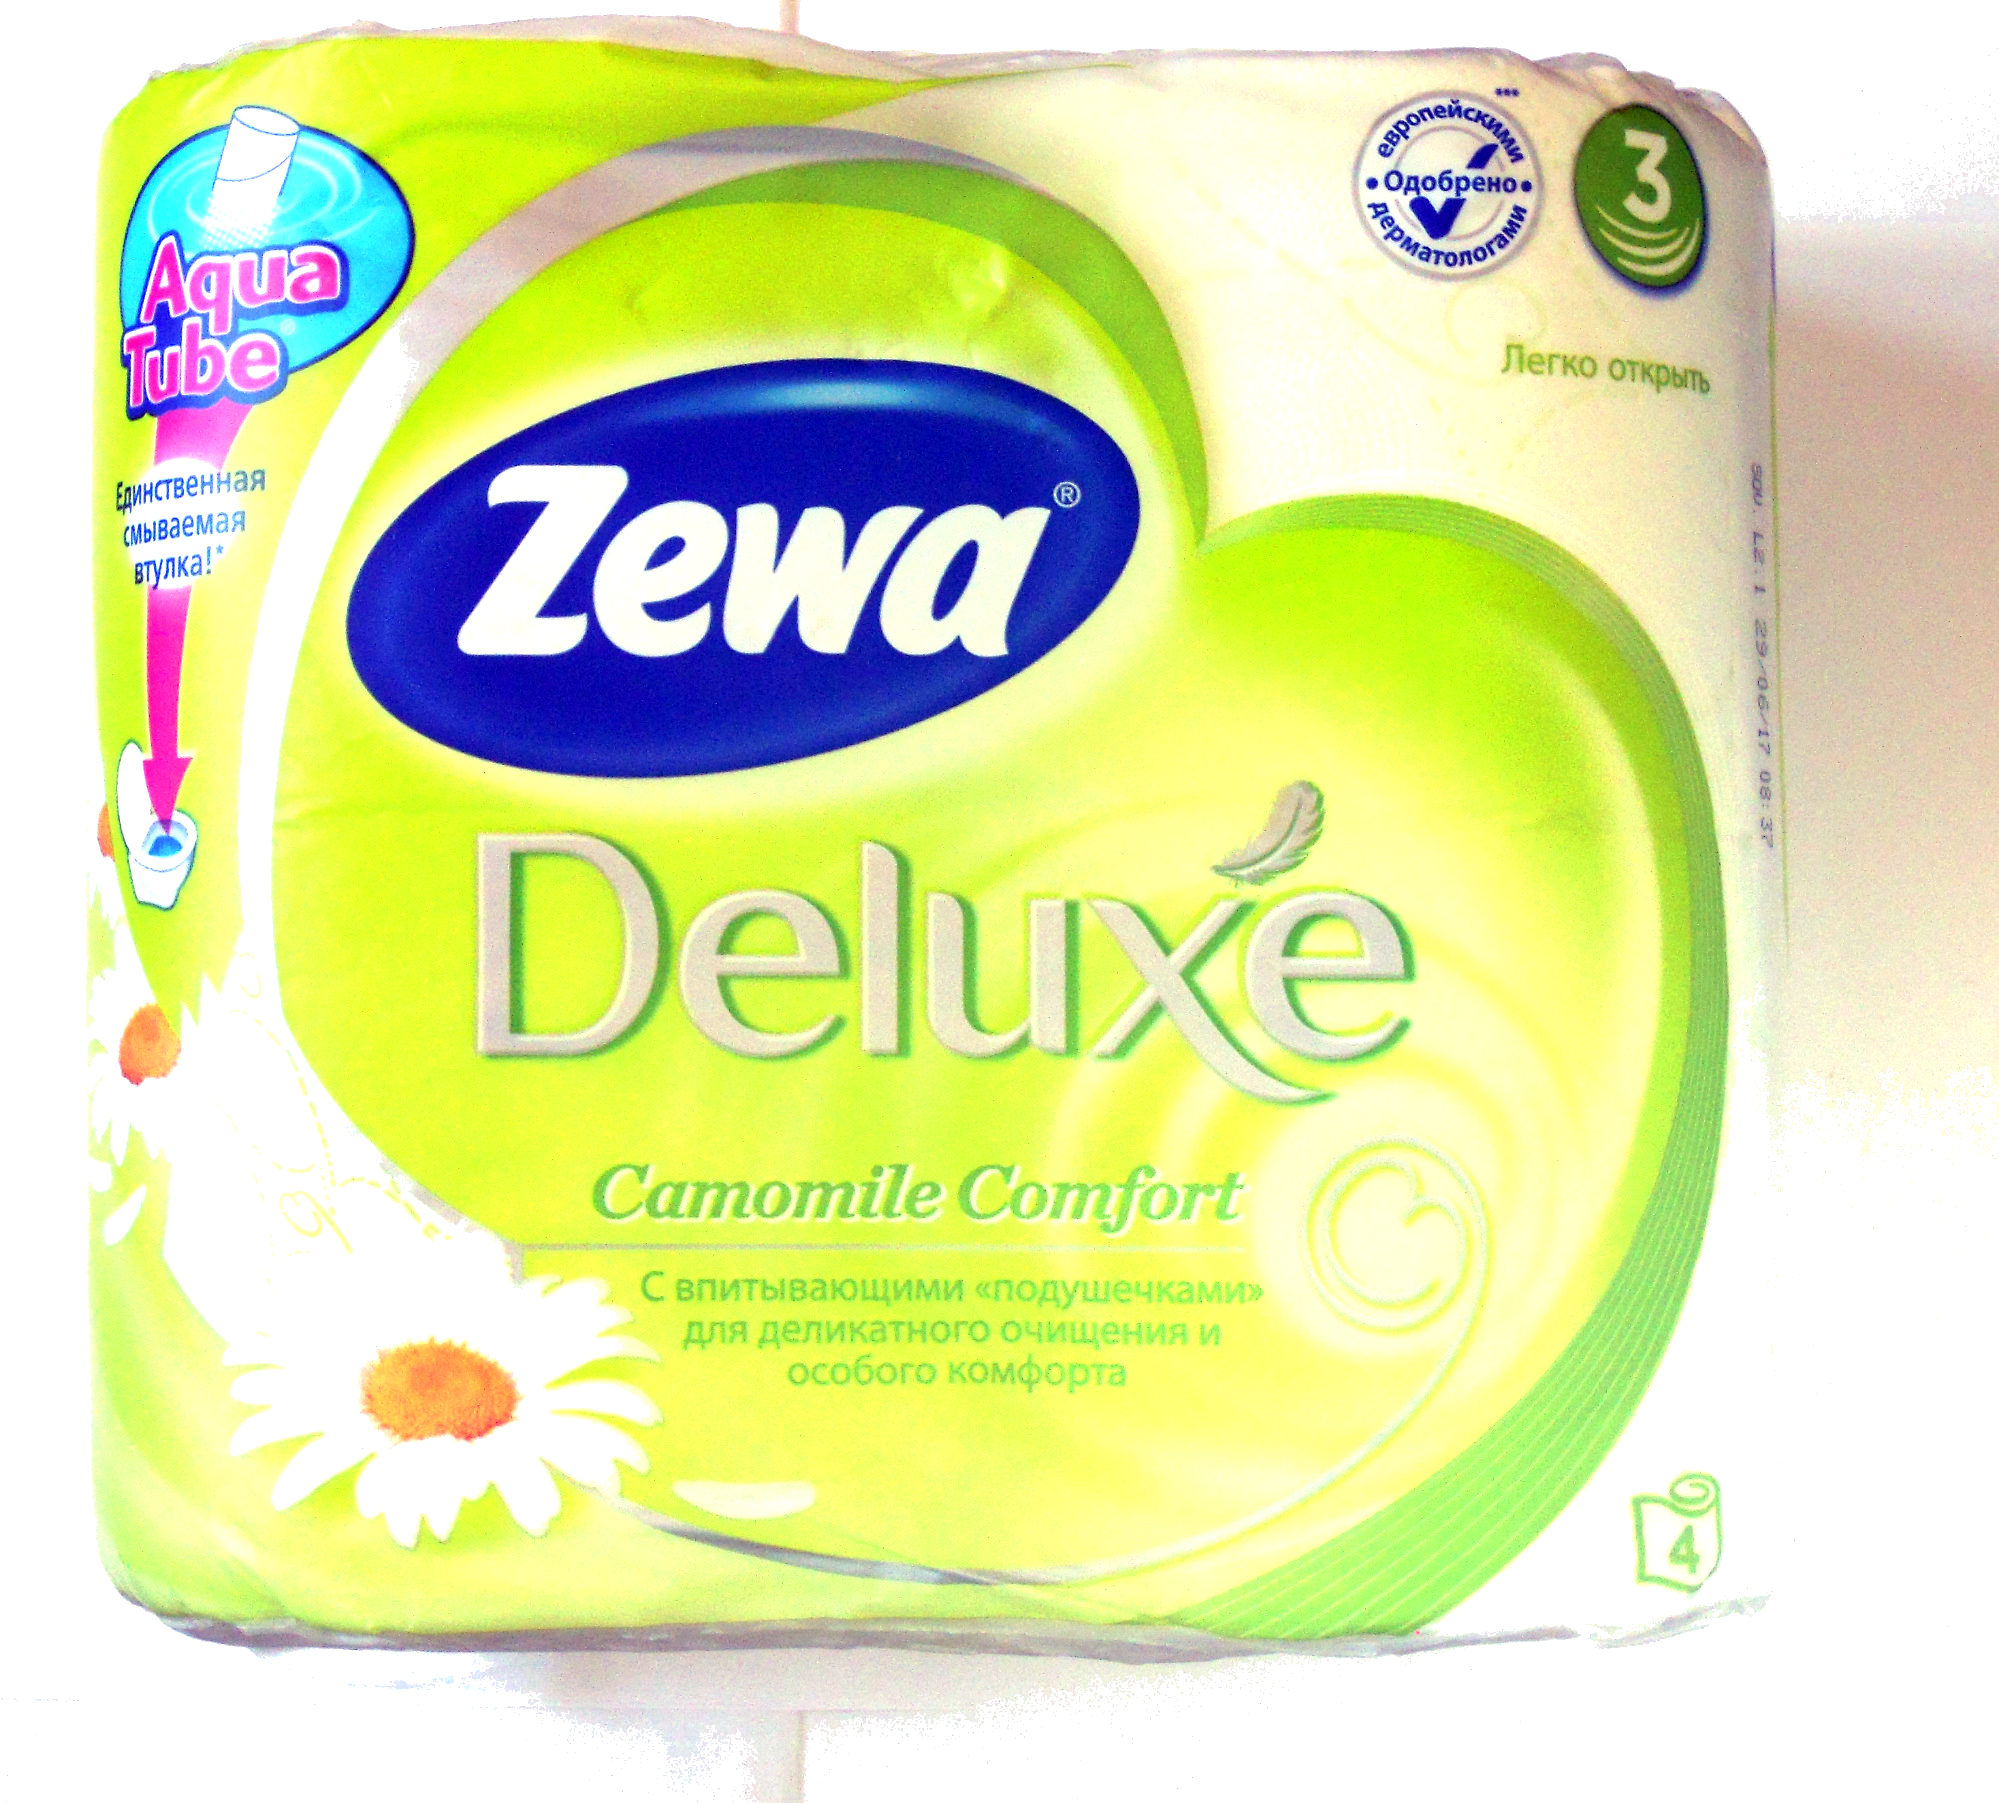 Zewa Deluxe Camomile Comfort - Product - ru